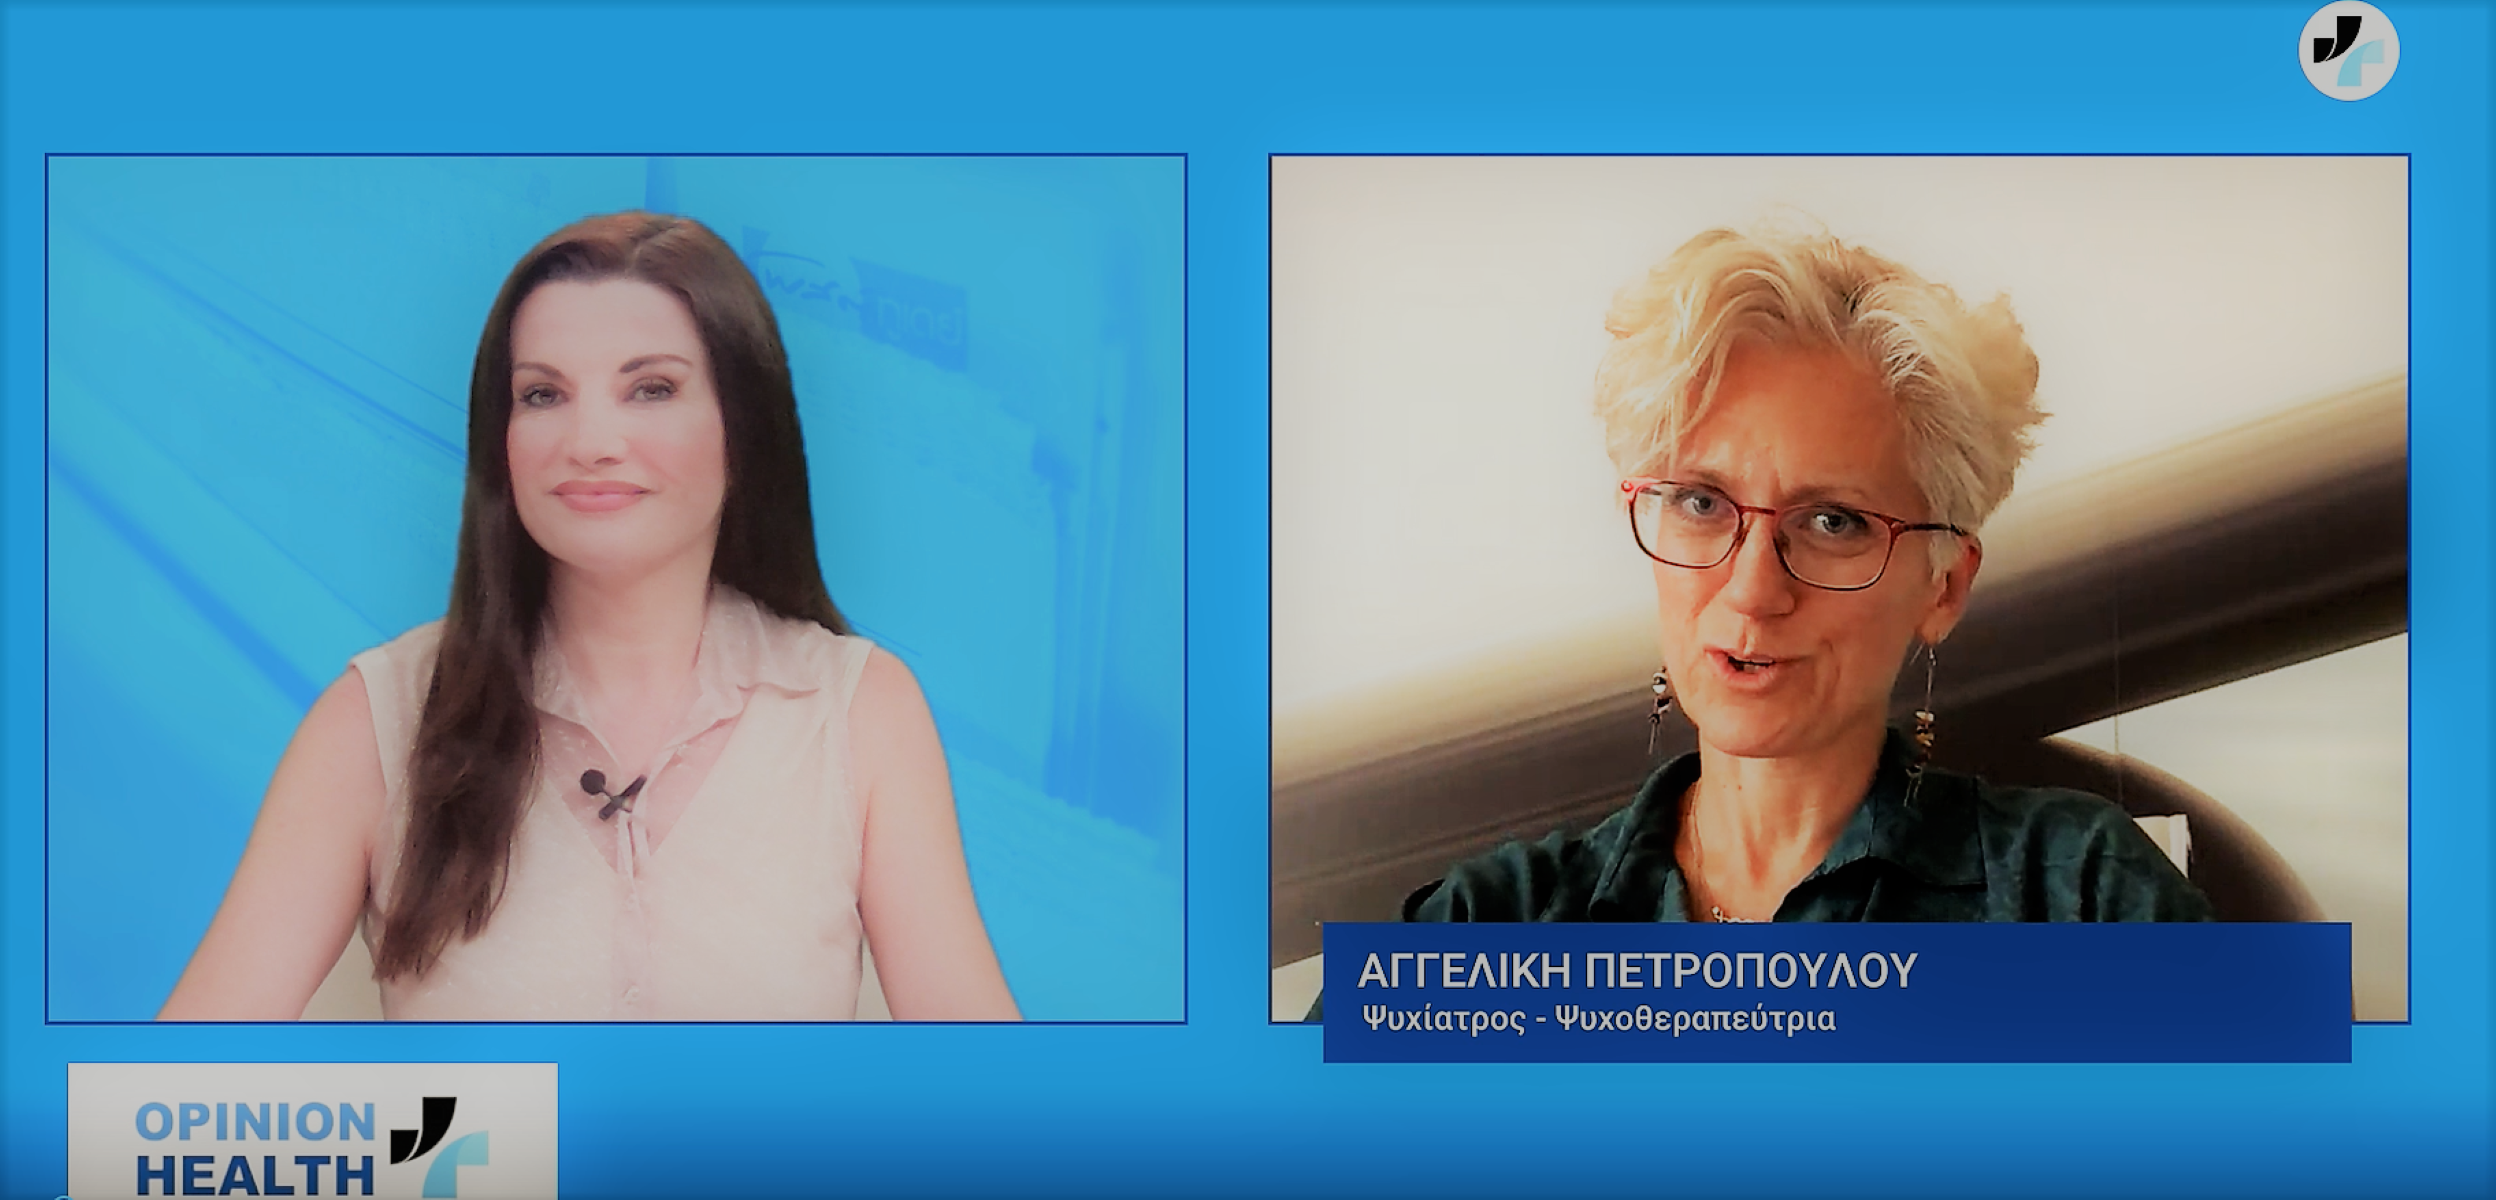 Η Αγγελική  Πετροπούλου στο Healthweb.gr: Βιώνουμε μετατραυματικό στρες λόγω καραντίνας  